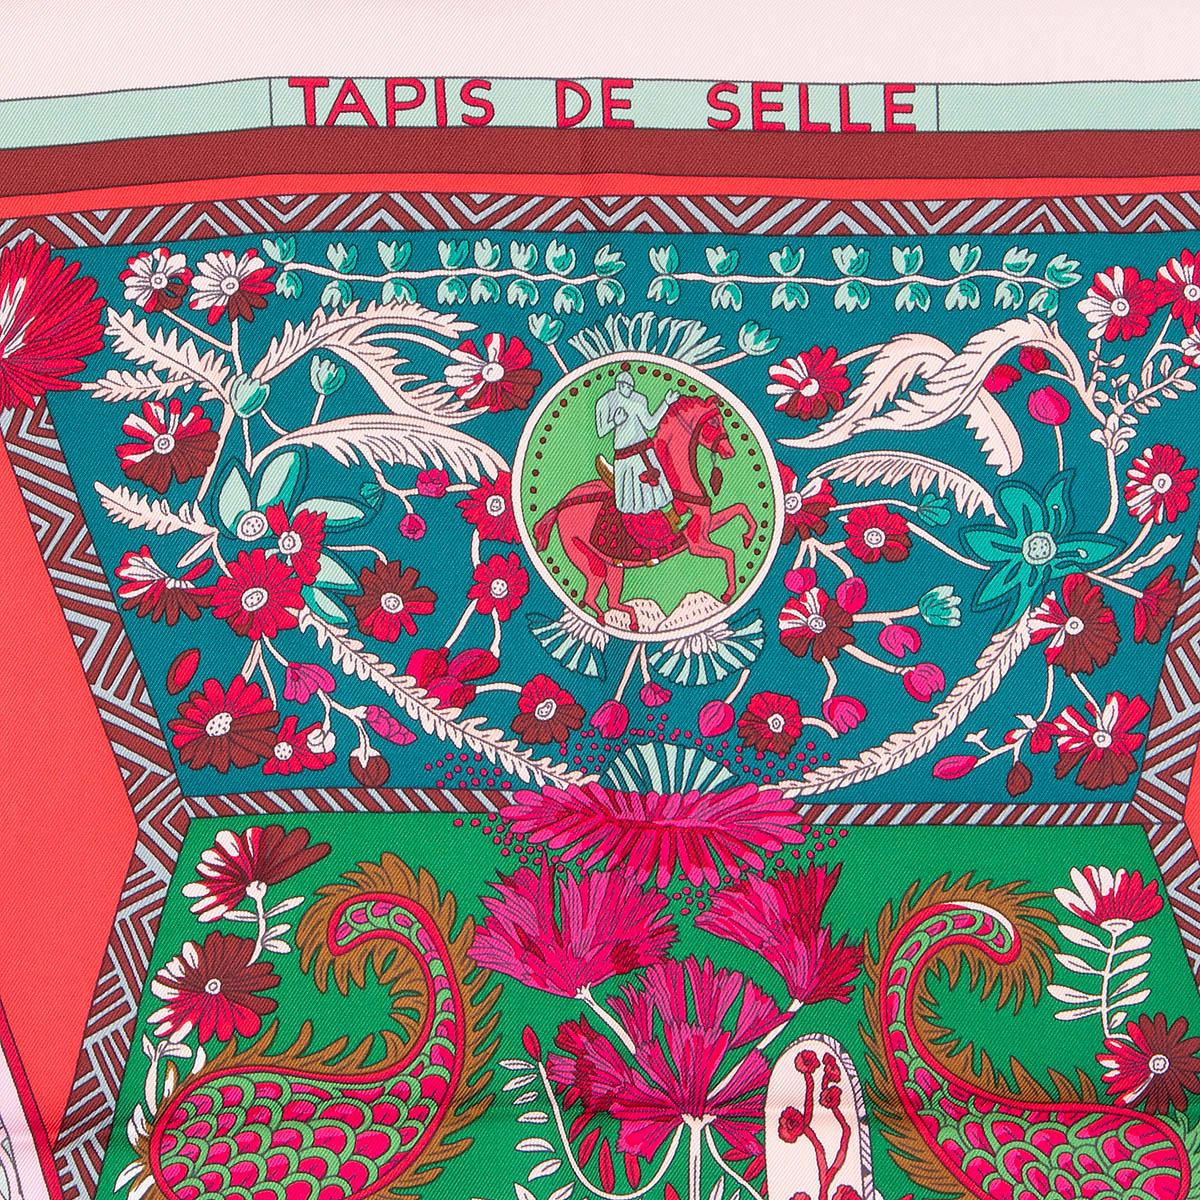 100% authentischer Hermes Tapis de Selle 90 Schal von Annie Faivre aus rosafarbenem Seidenköper (100%) mit Details in Grün, Burgunderrot und Grau. Wurde getragen und ist in ausgezeichnetem Zustand.

Die Geschichte dahinter:
Inspiriert von einem